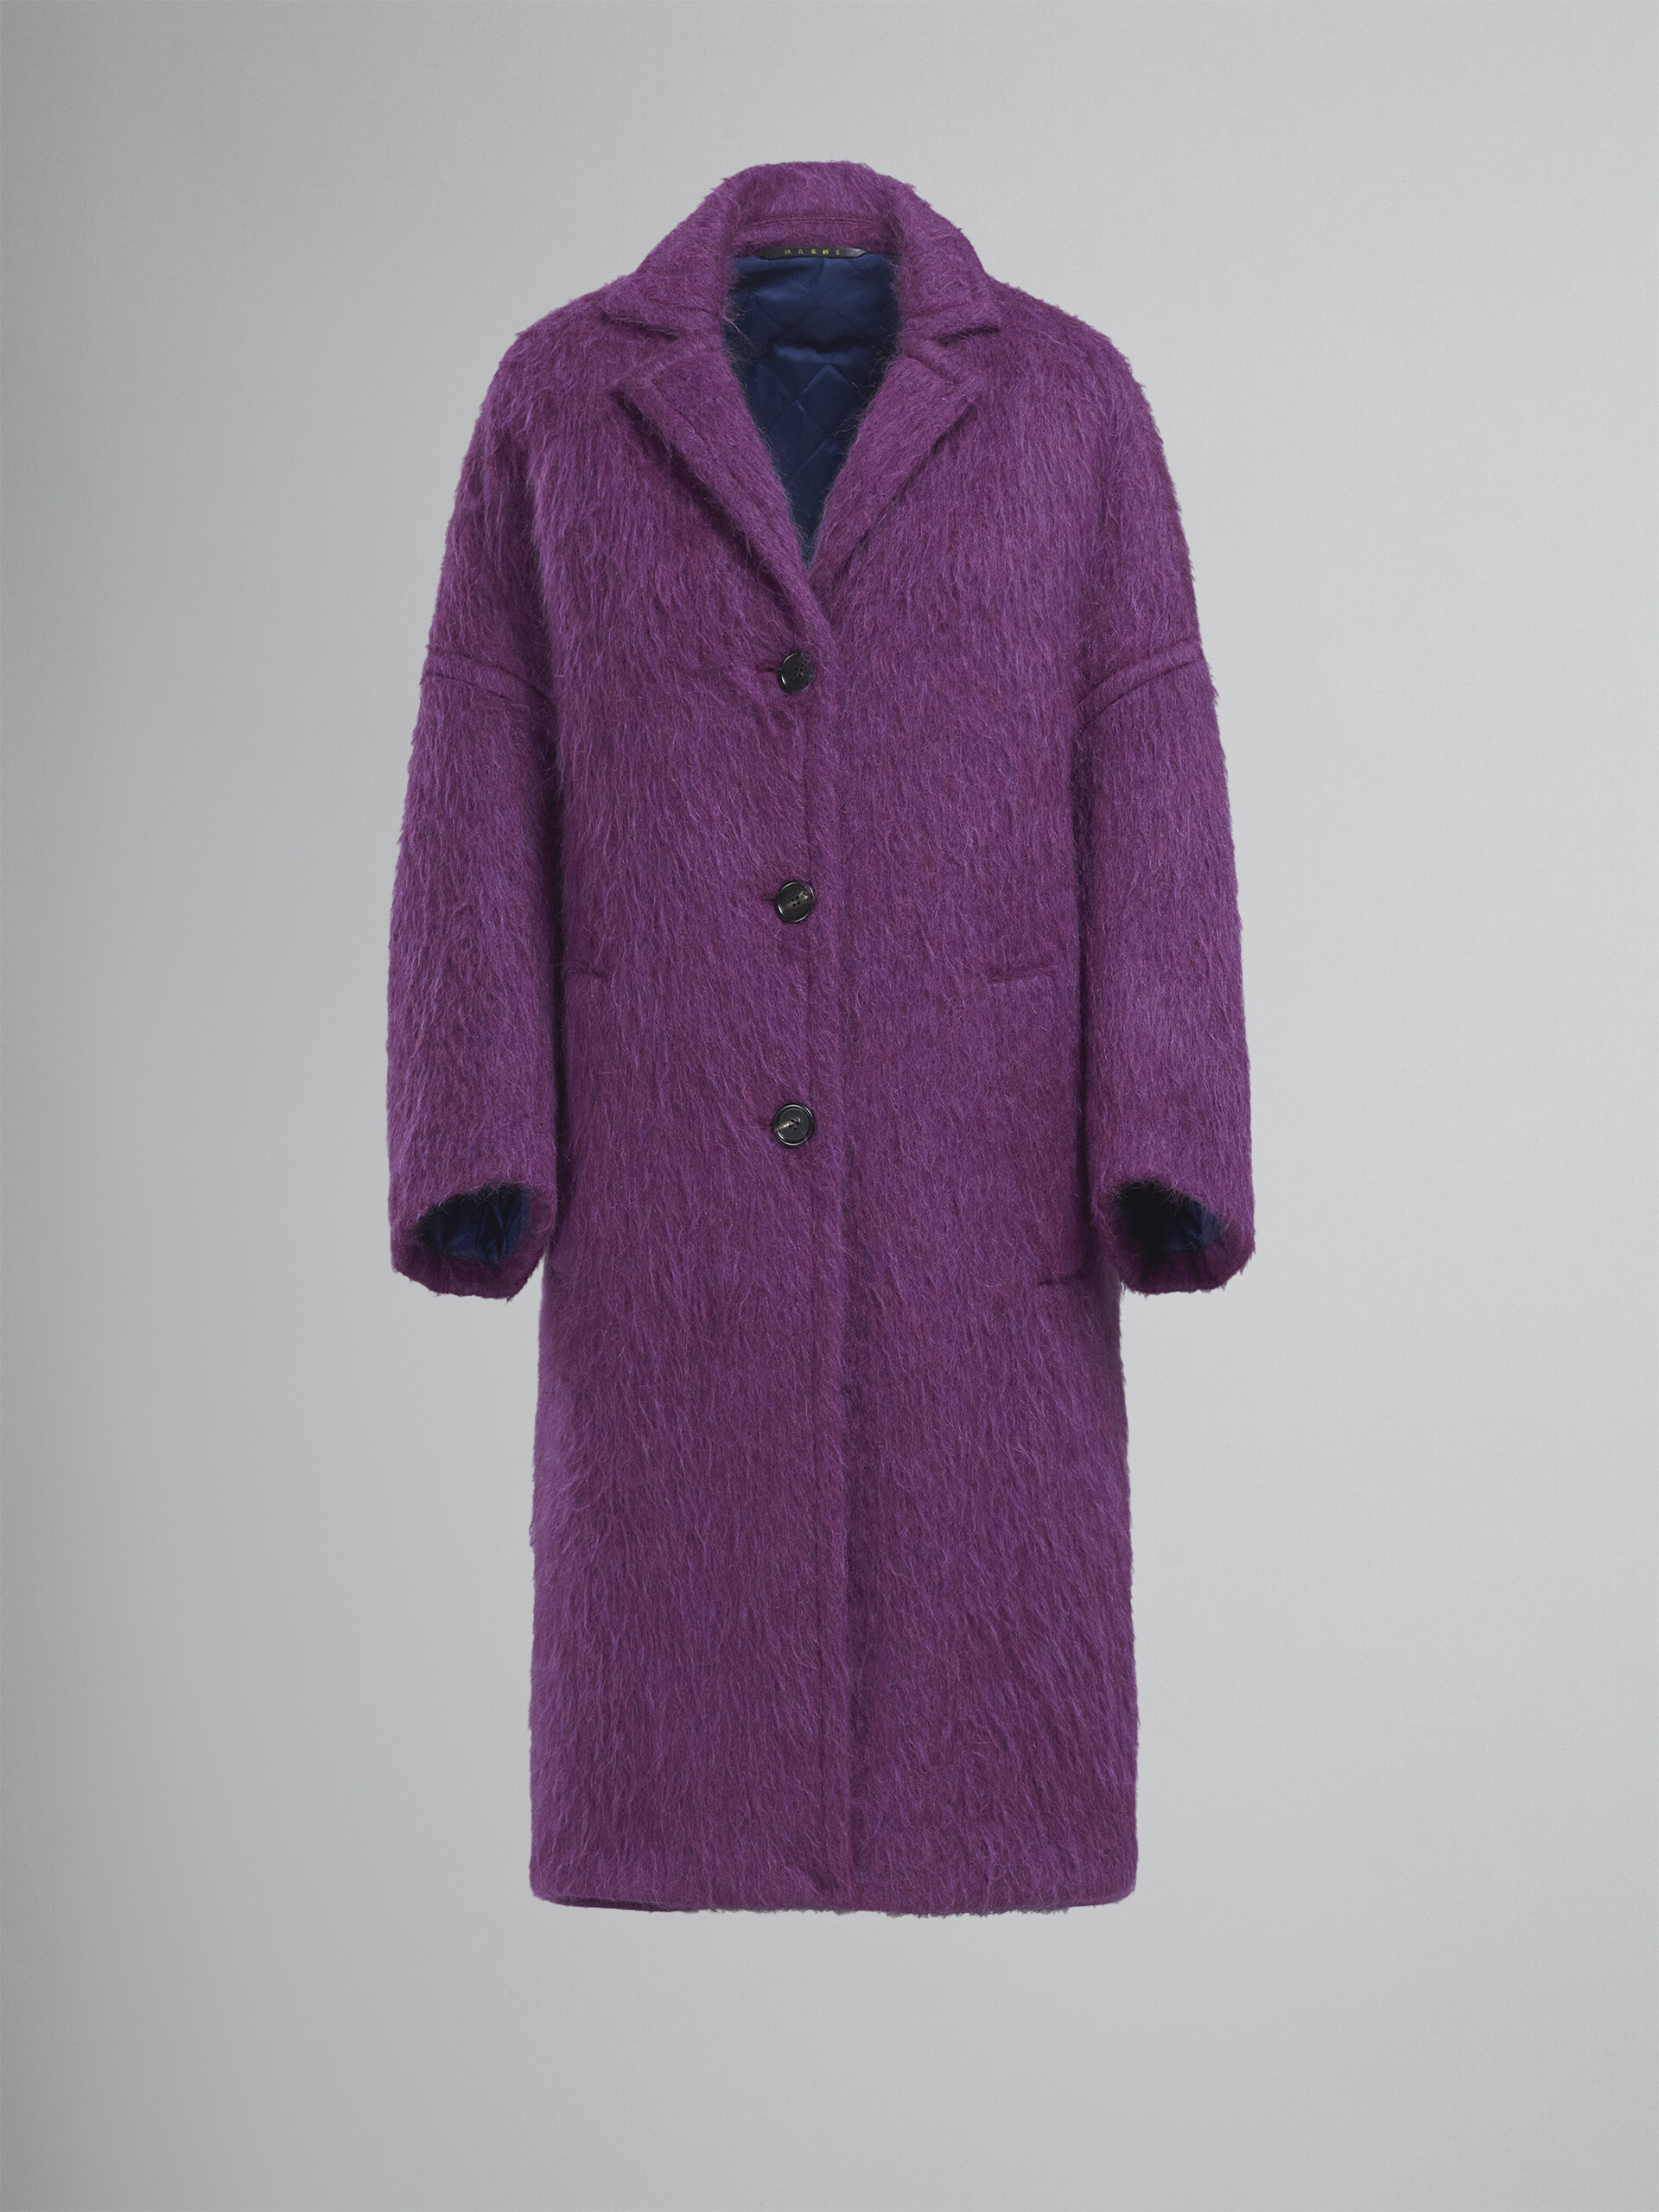 Reversible brushed wool coat - Coats - Image 1